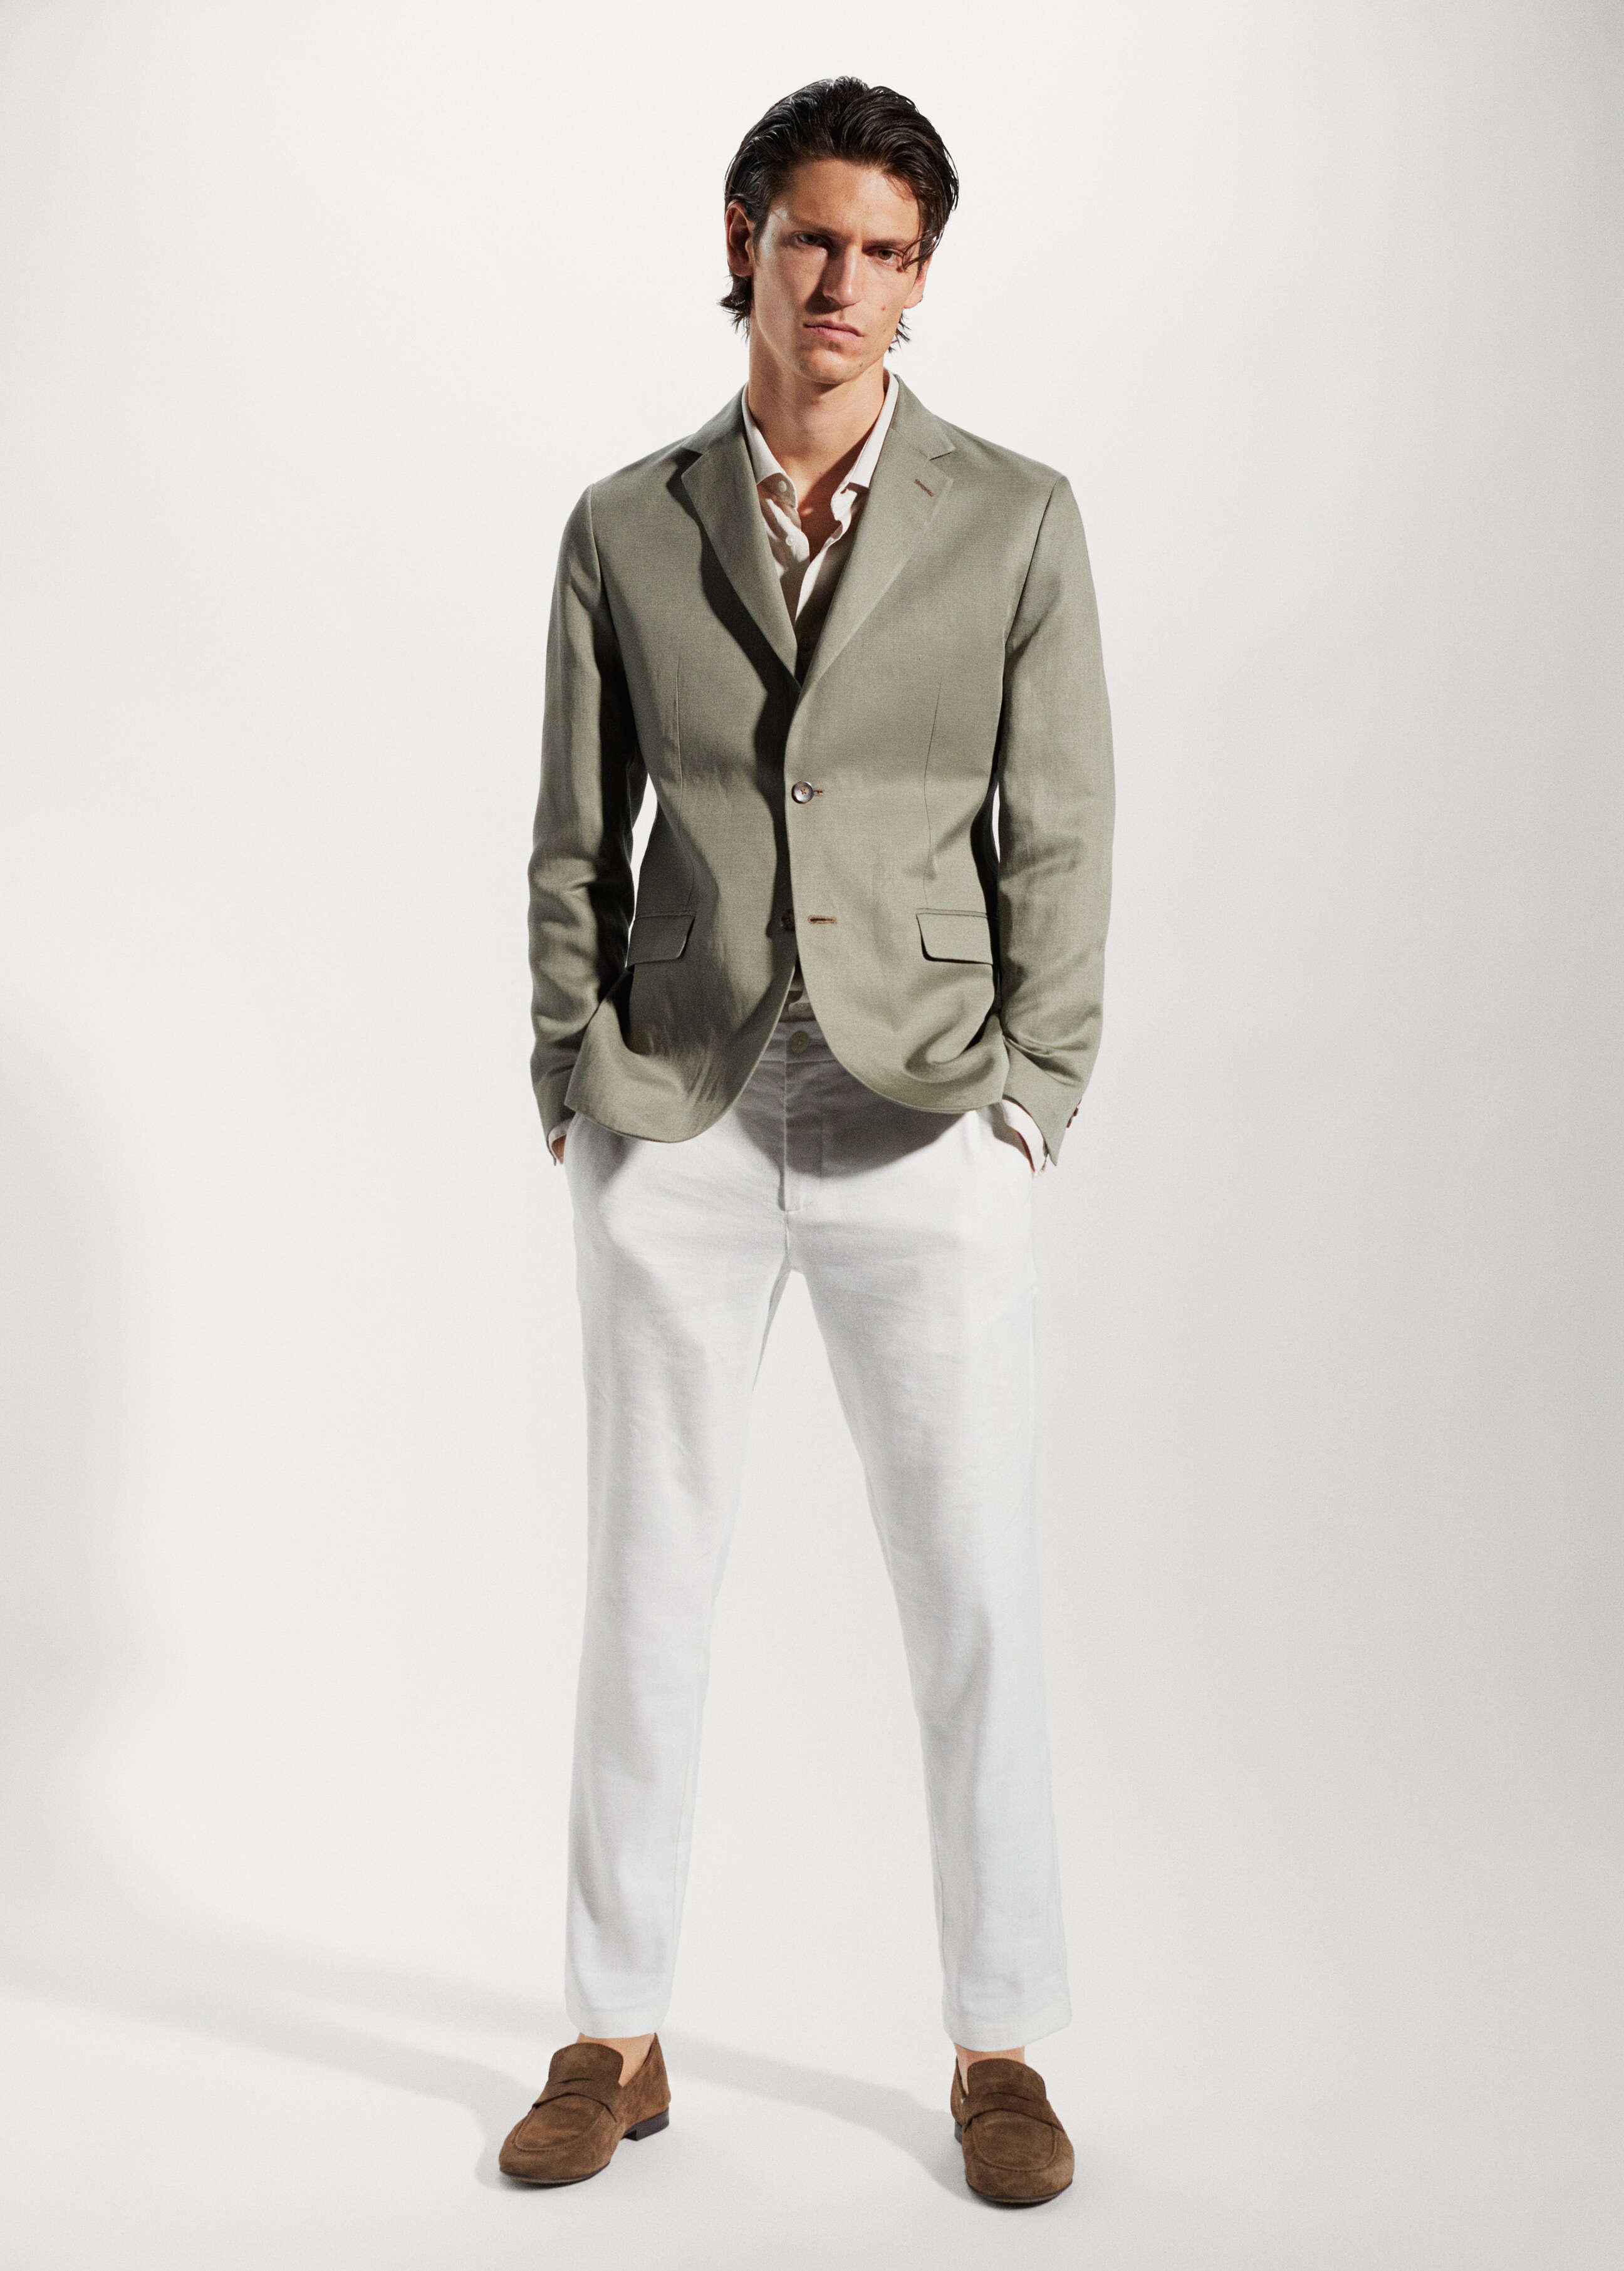 Slim fit linen suit blazer - General plane